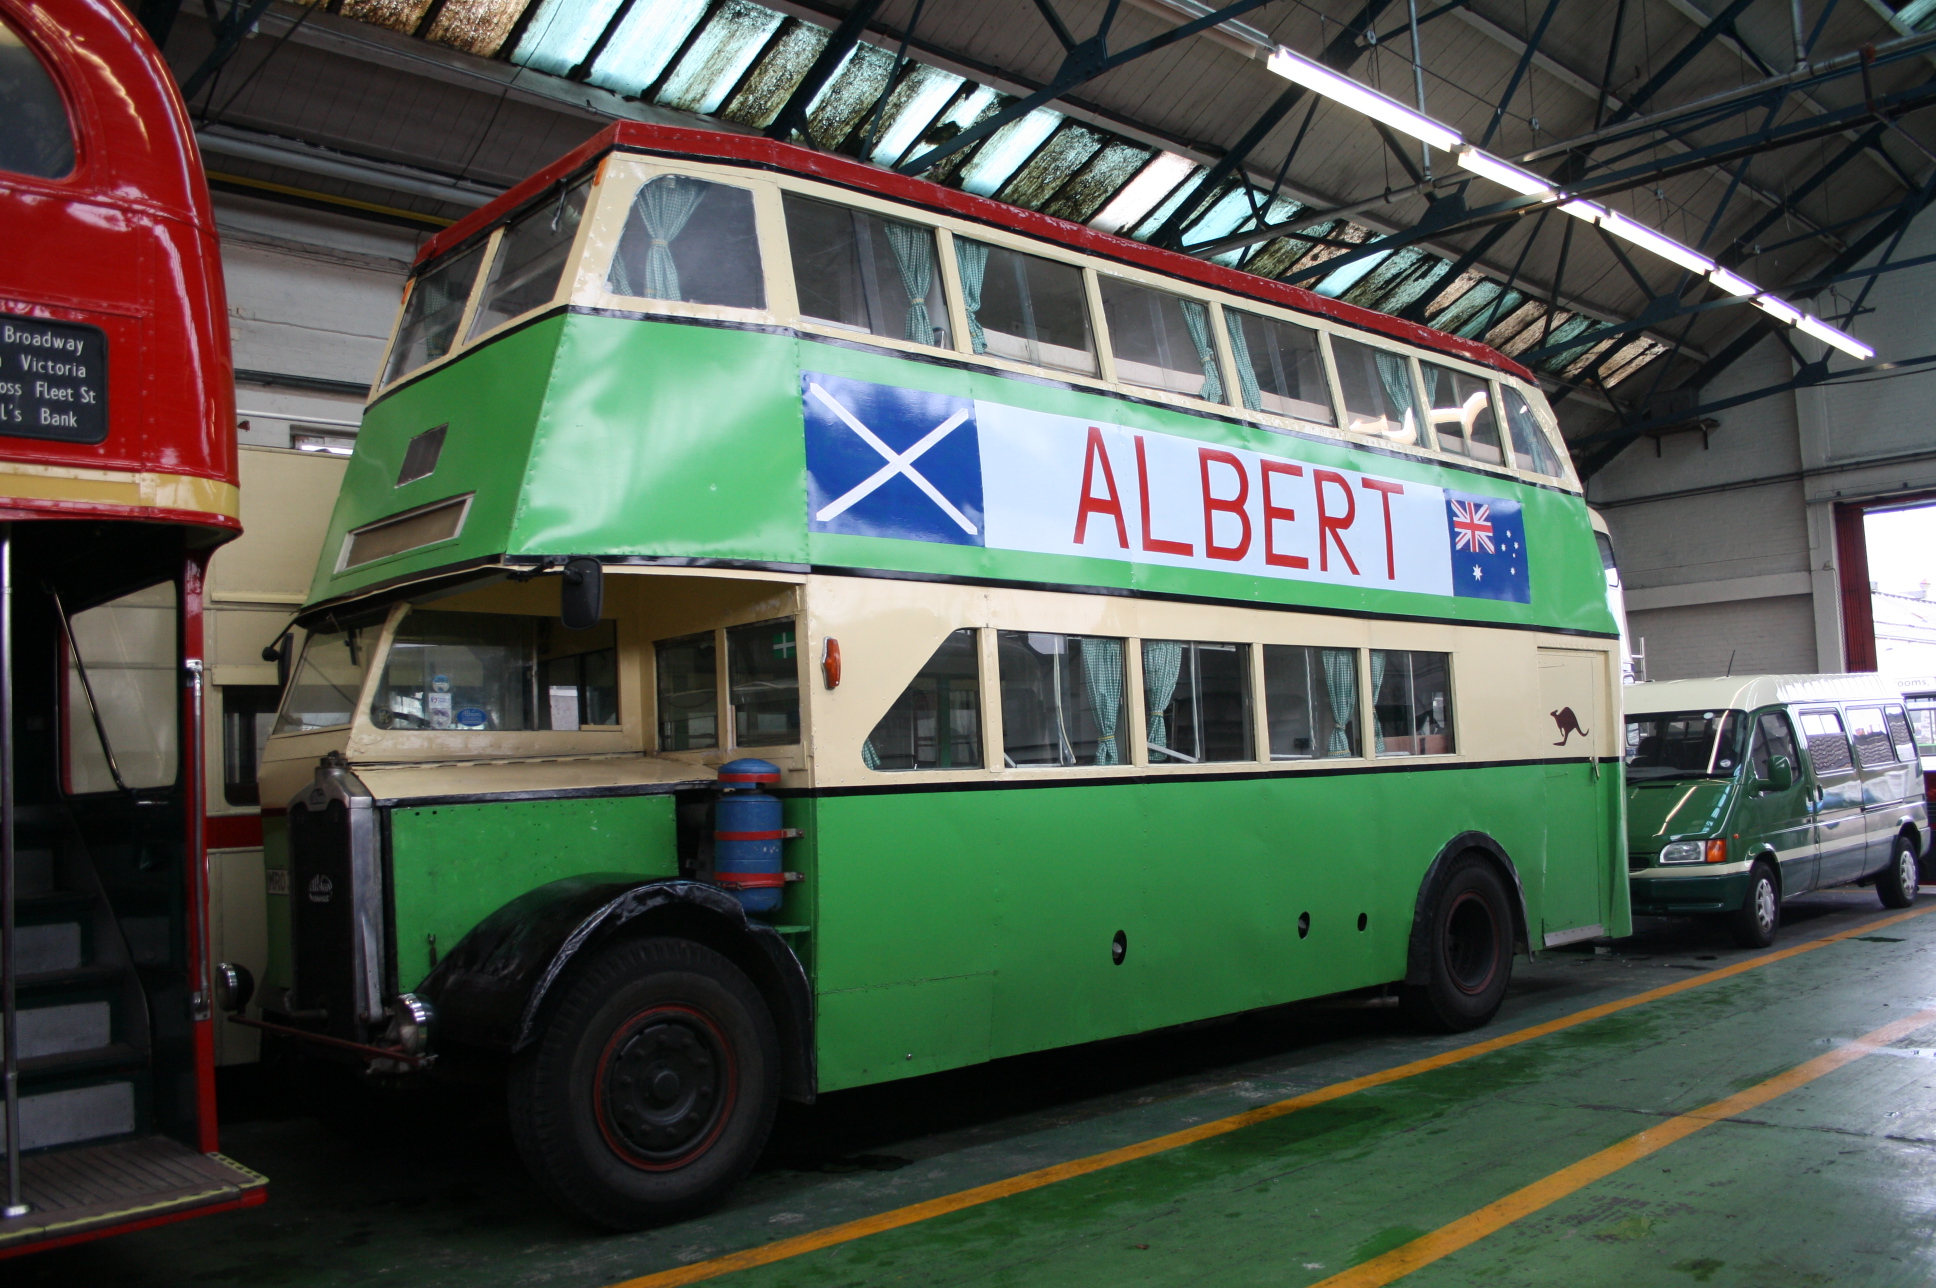 Az Albert nevű busz 2004-ben, már nyugdíjazva és kiállítva (kép forrása: Flickr)